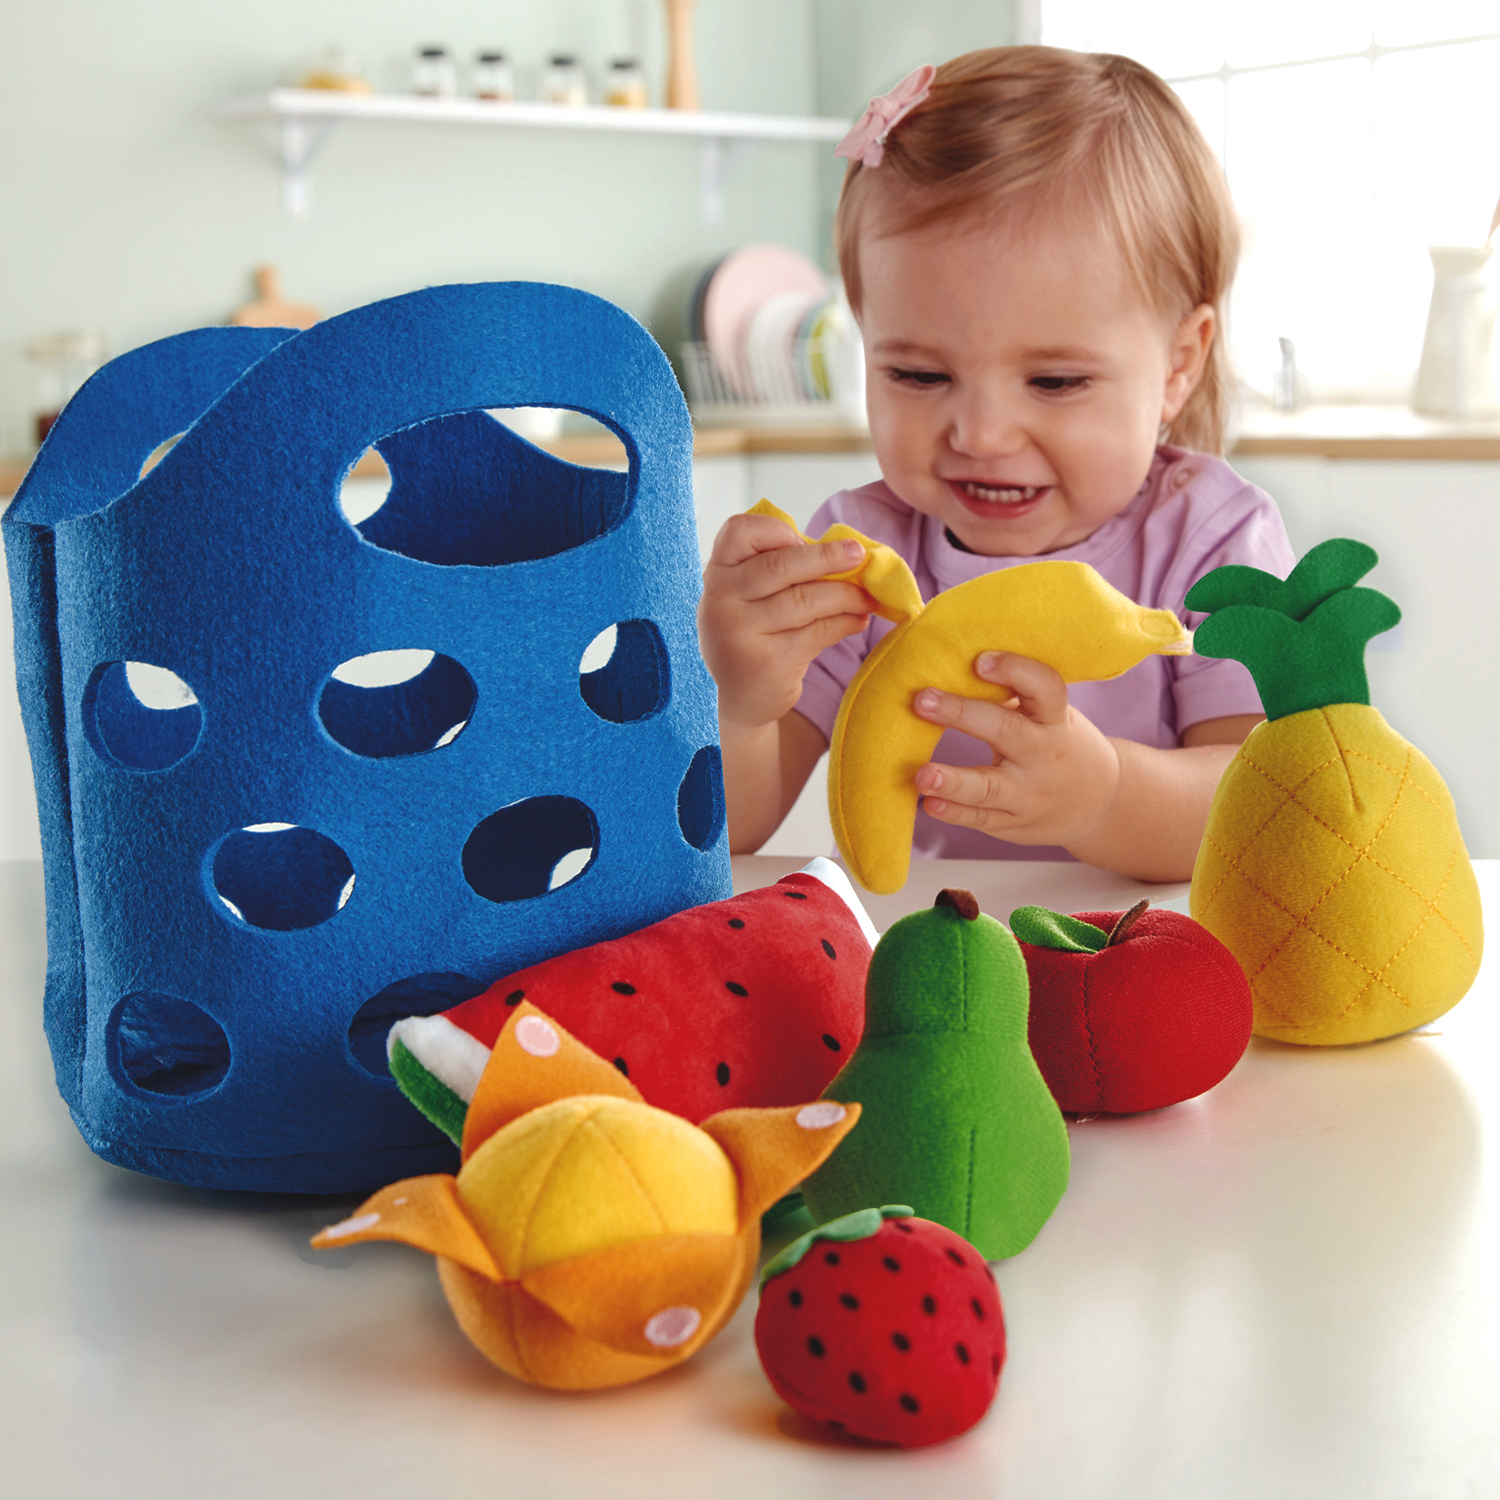 Игровой набор Корзина с фруктами Hape E3169_HP набор детской посуды top chef с корзинкой на 3 персоны